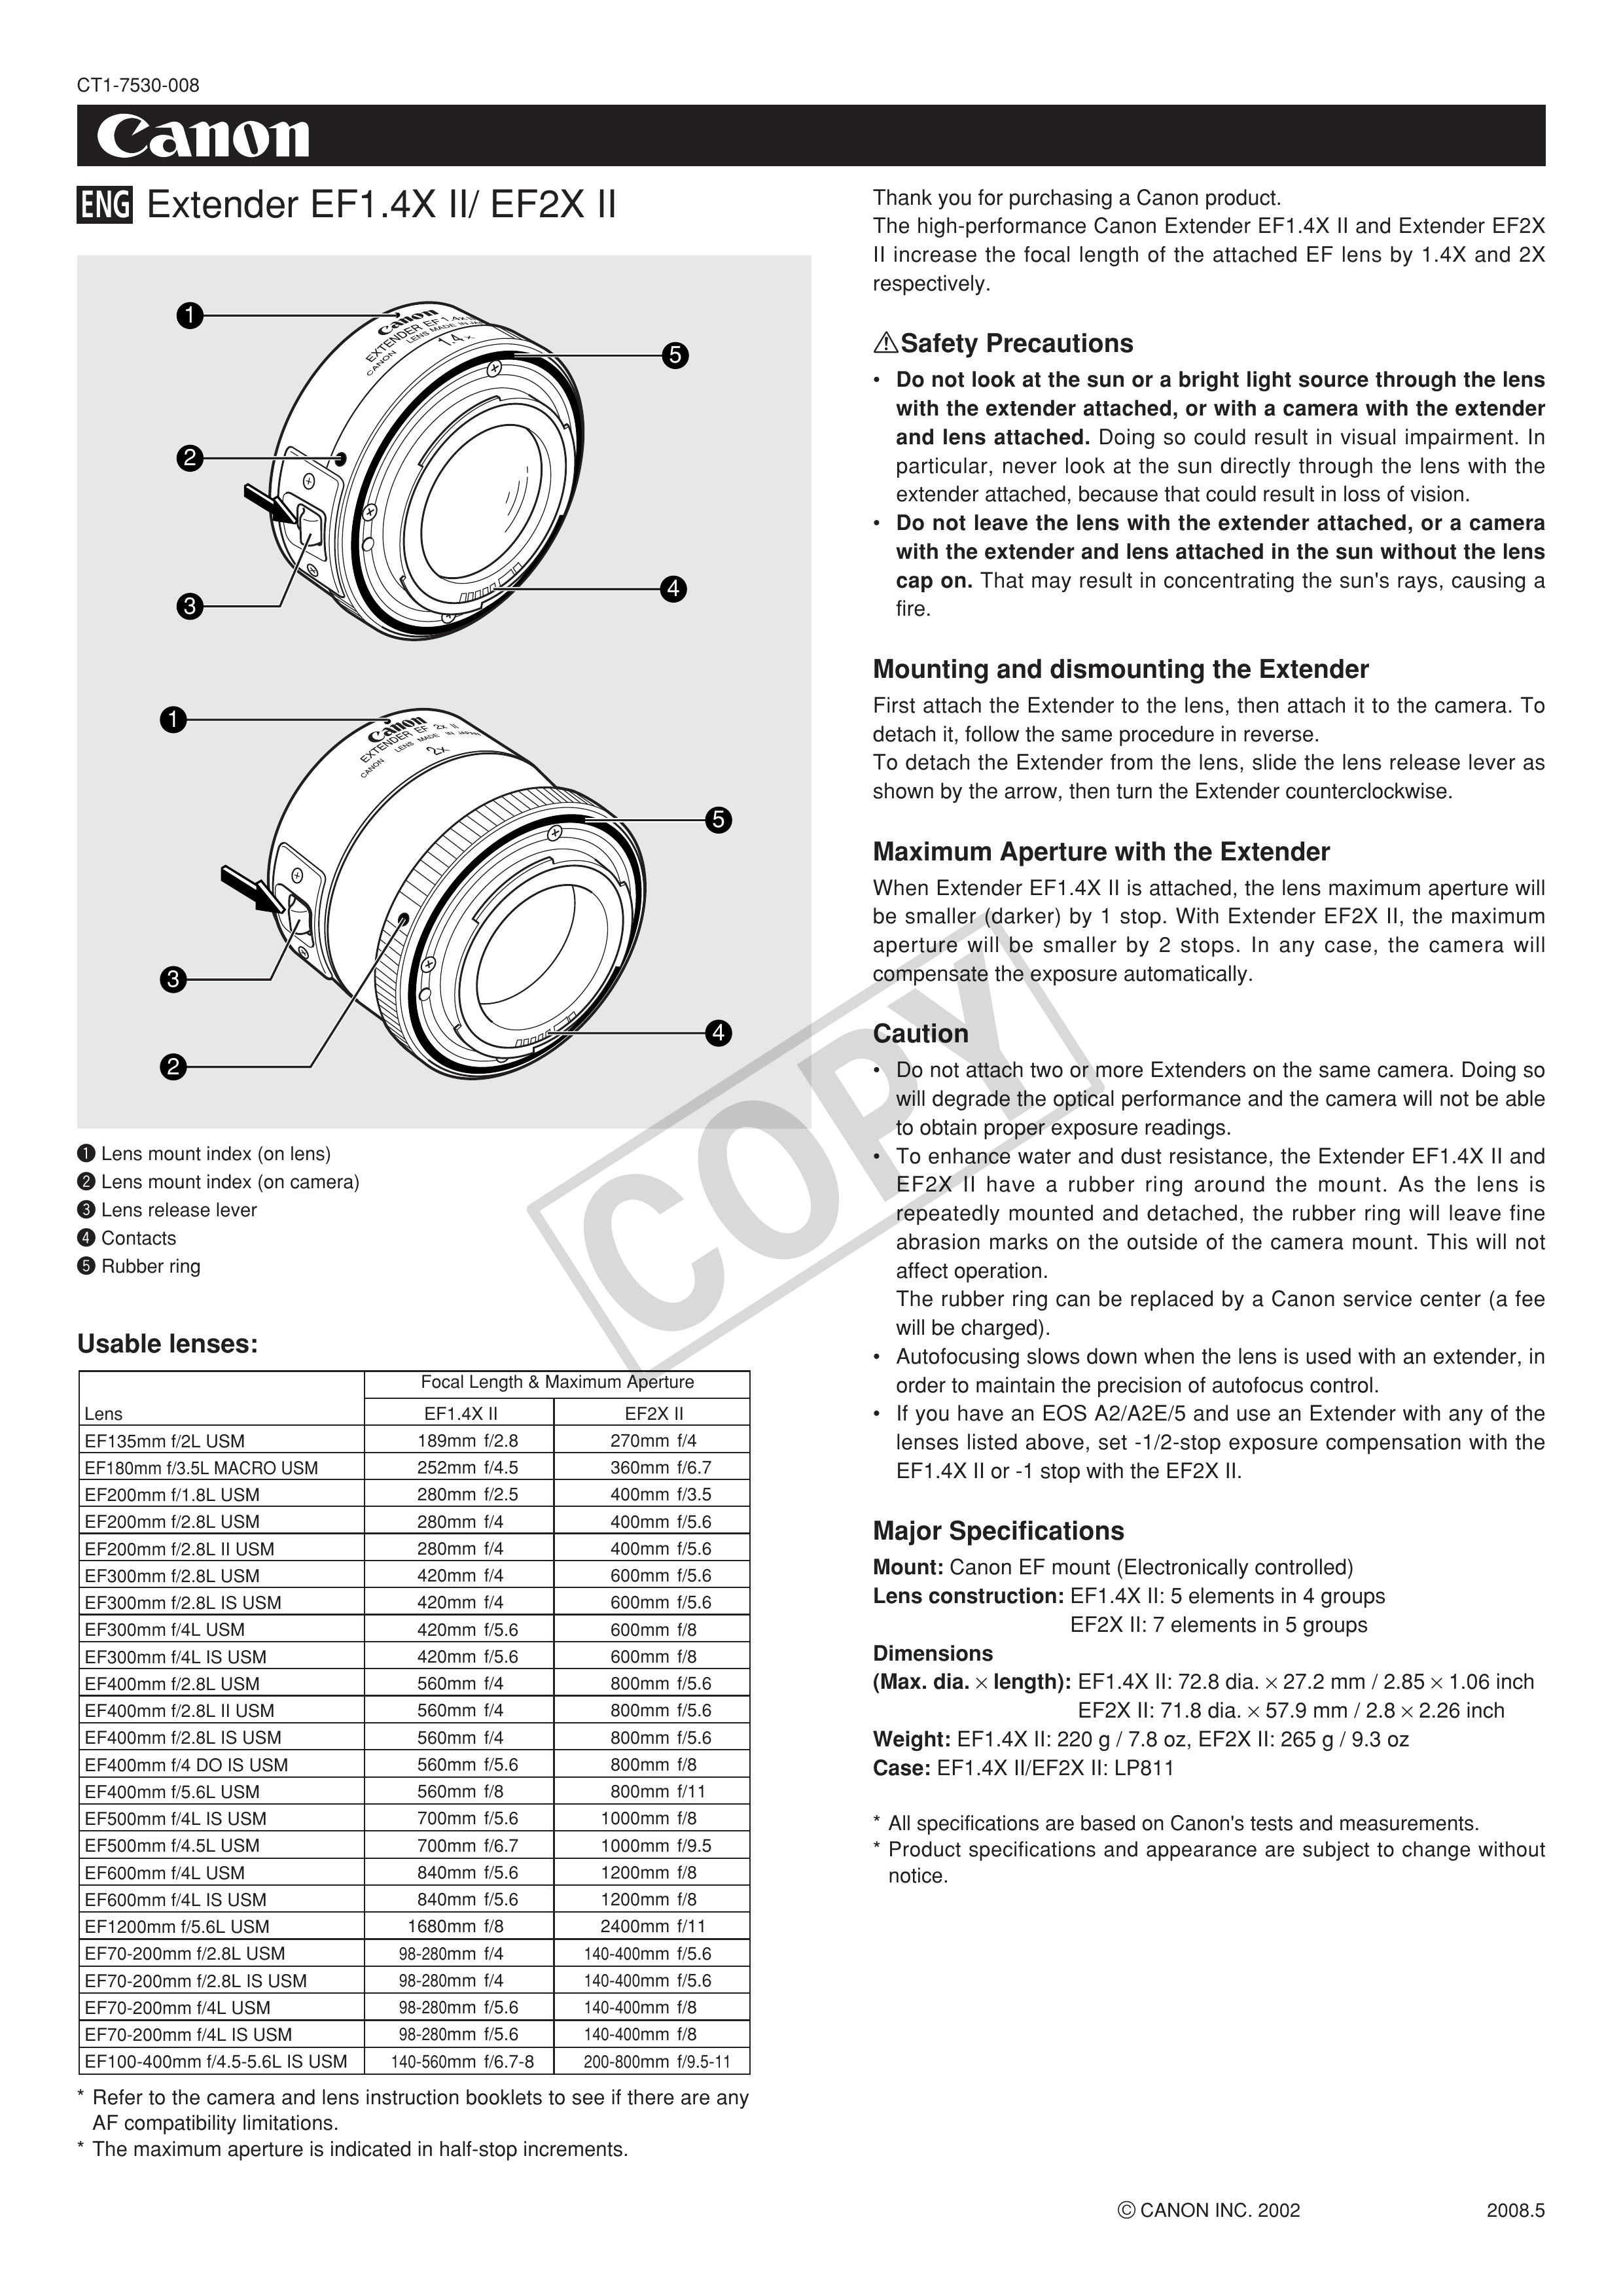 Cannon canon extender Camera Lens User Manual